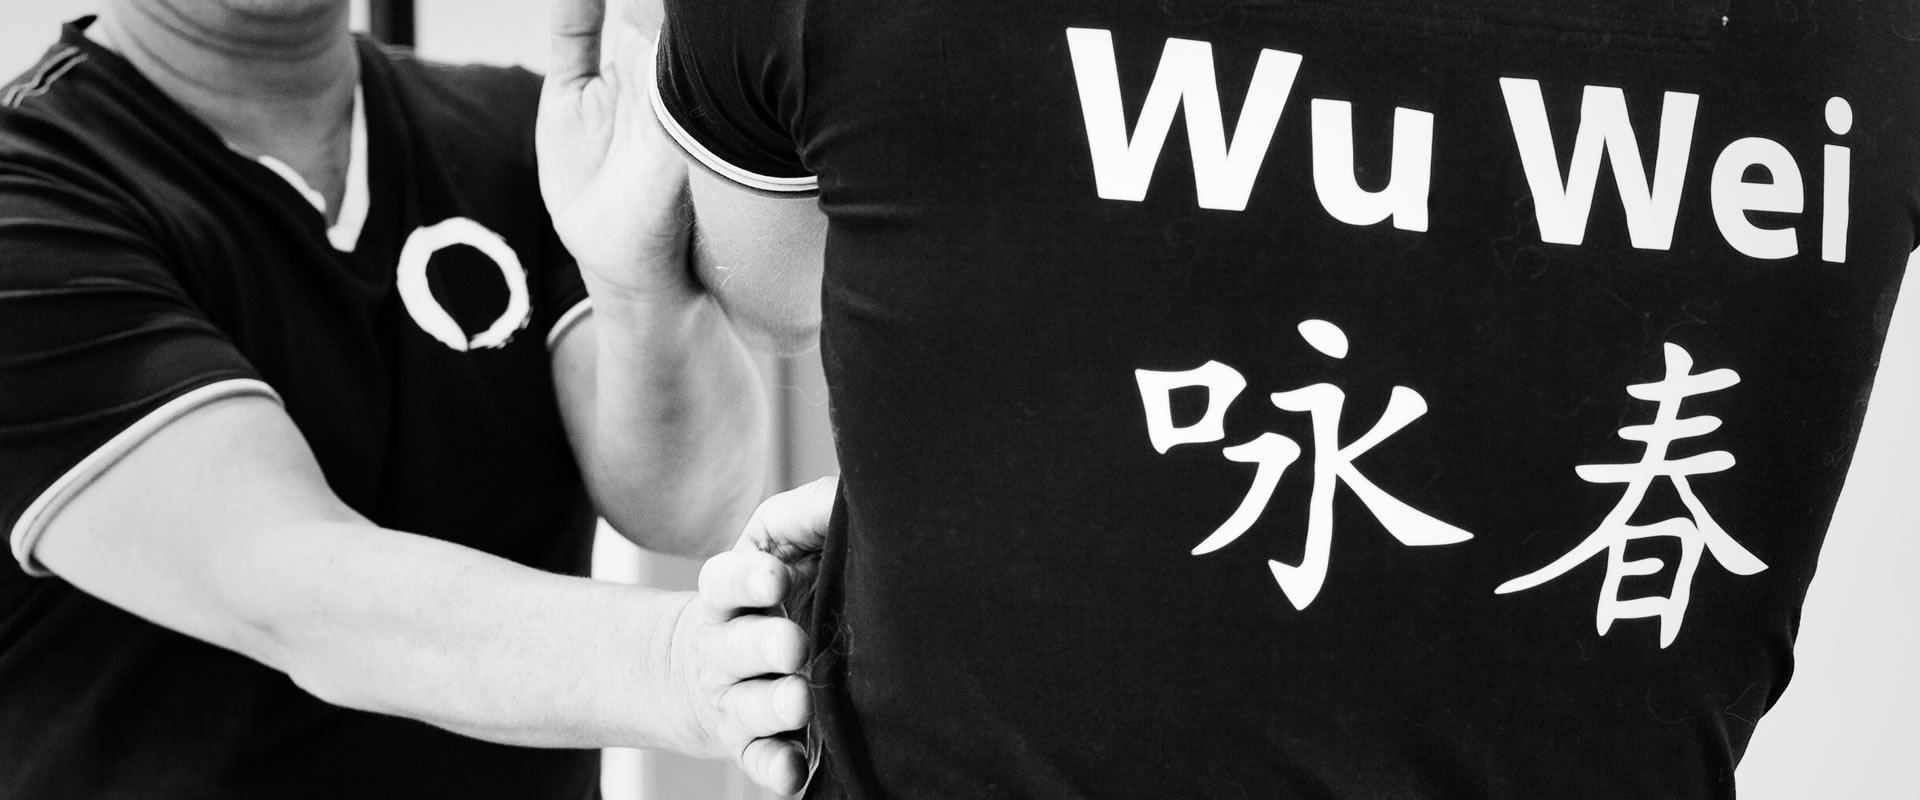 Wu Wei Wing Chun